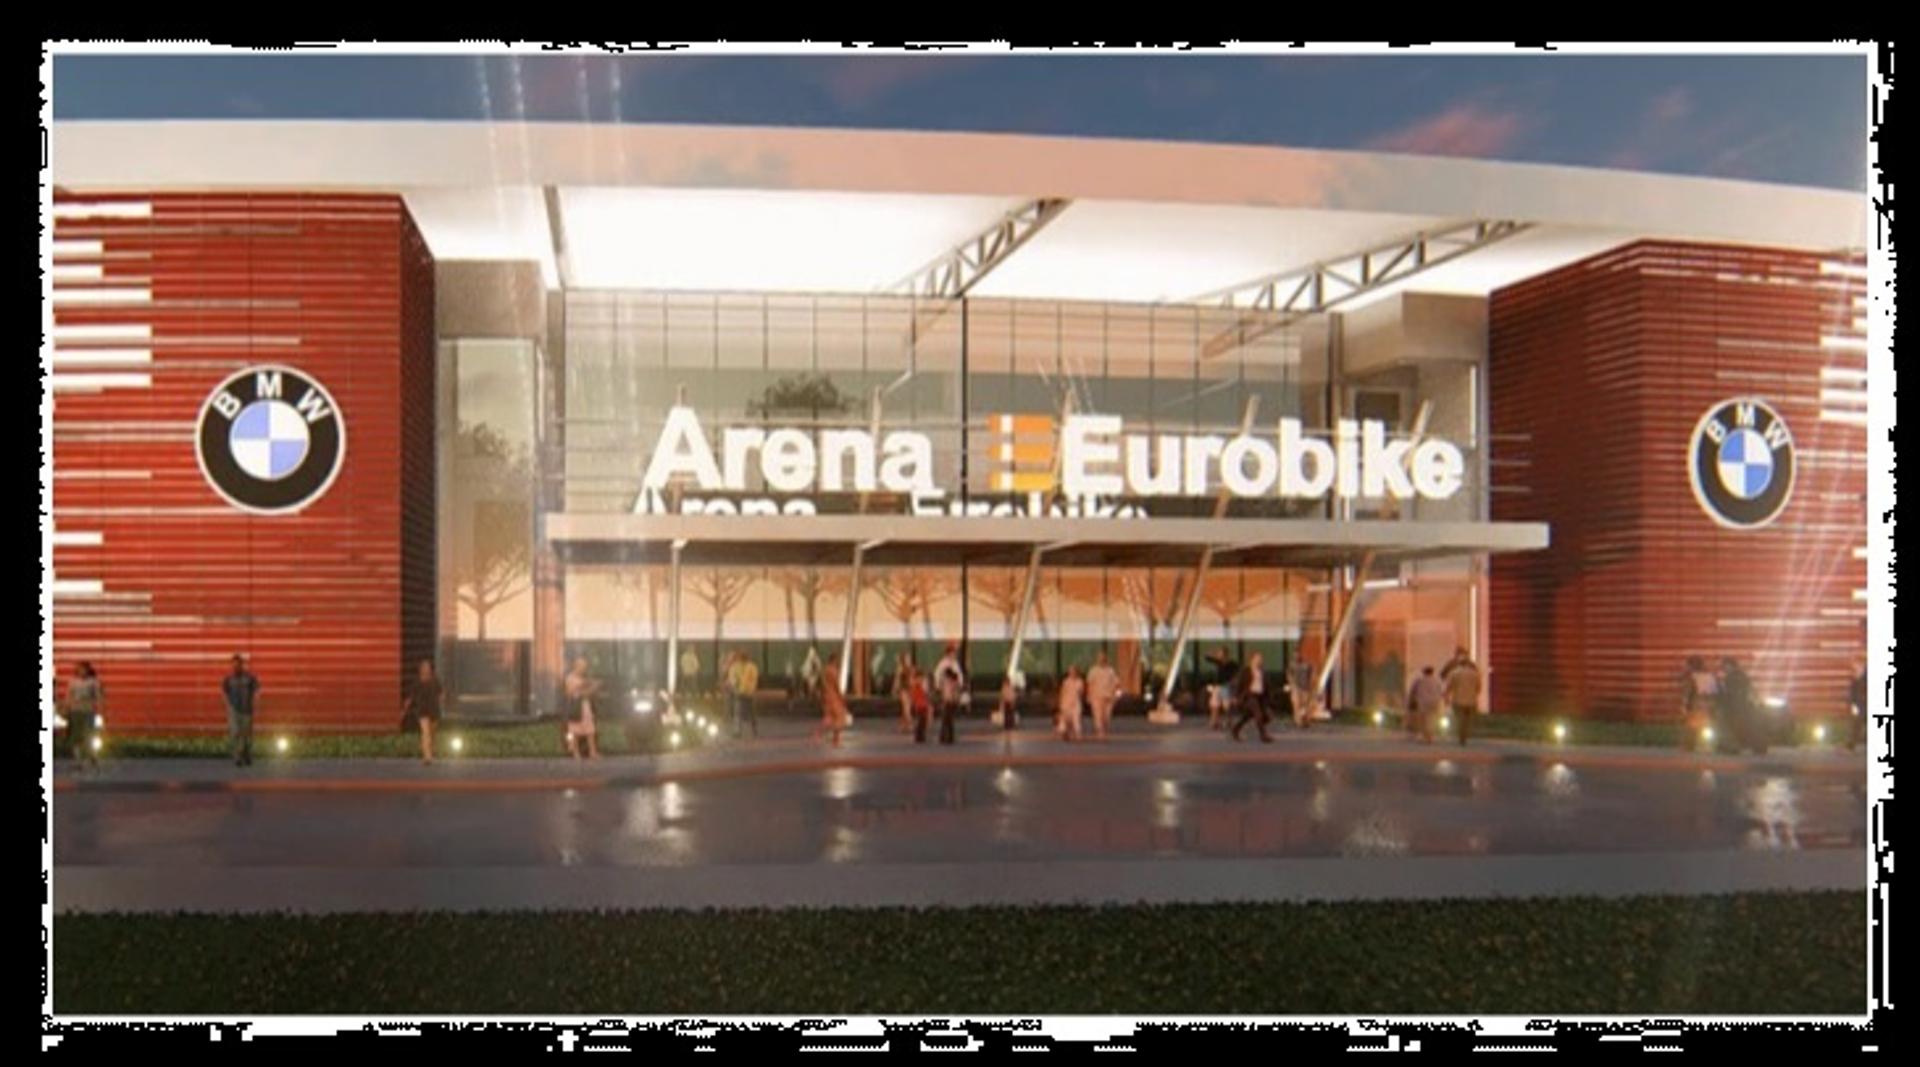 Arena Eurobike